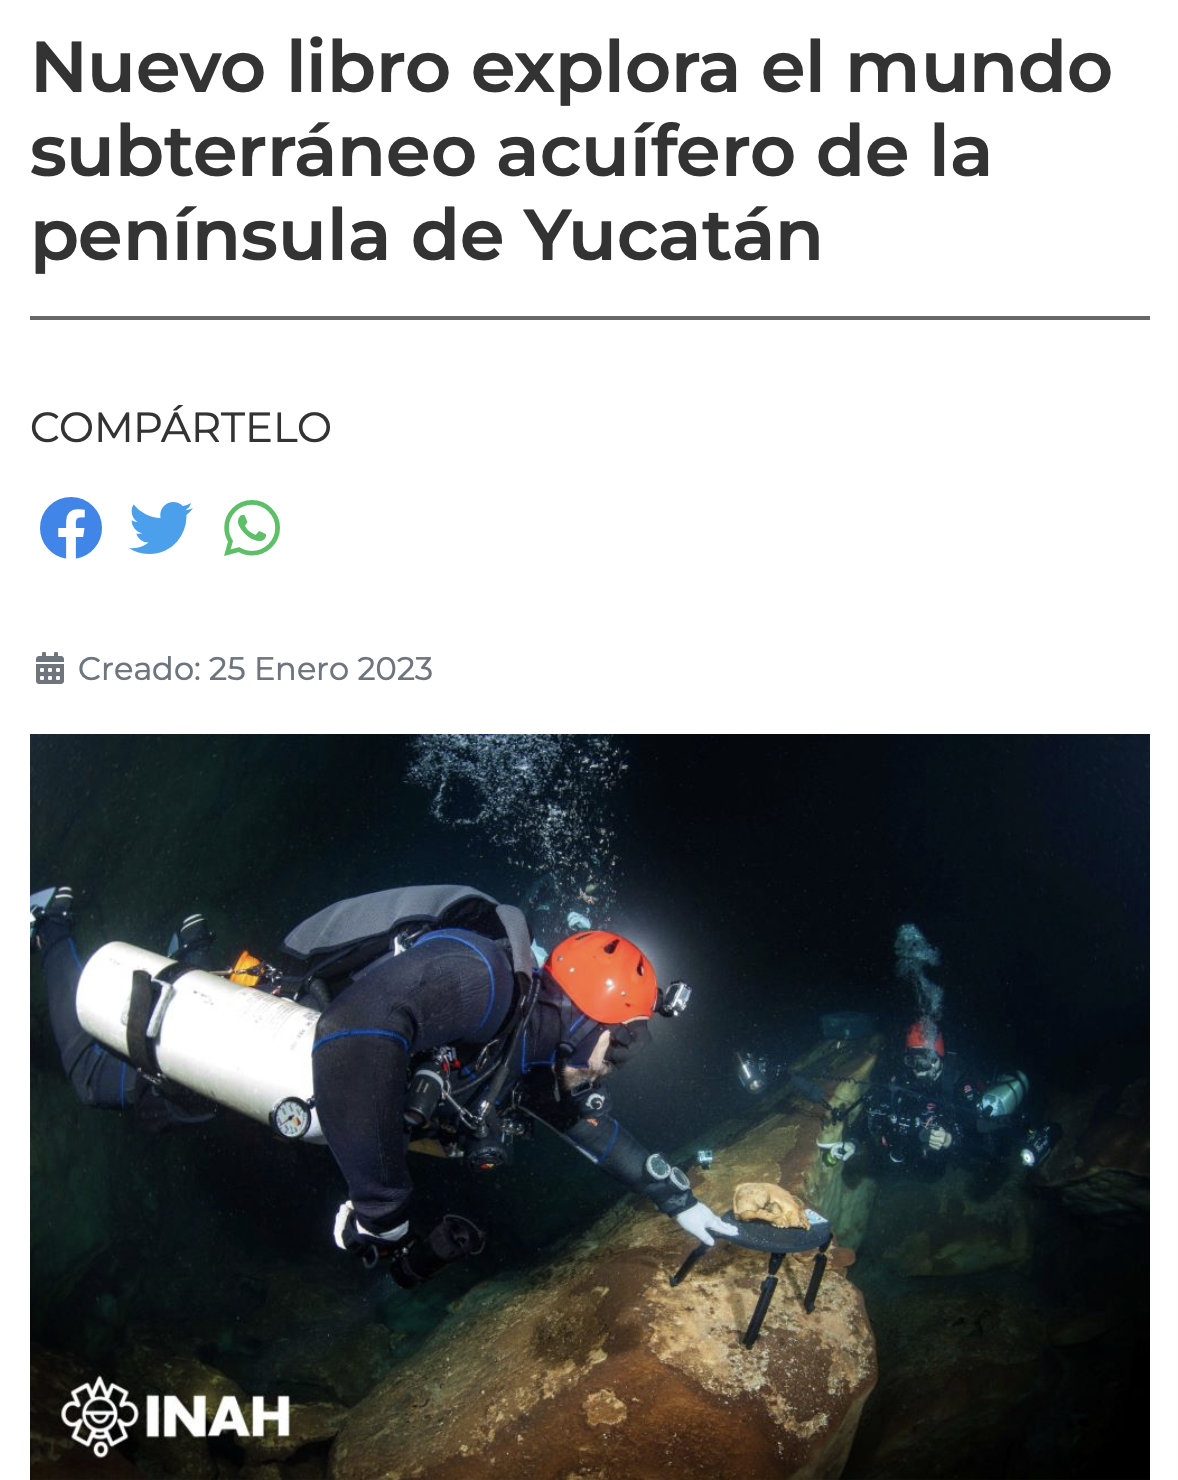 Nuevo libro explora el mundo subterráneo acuífero de la península de Yucatán